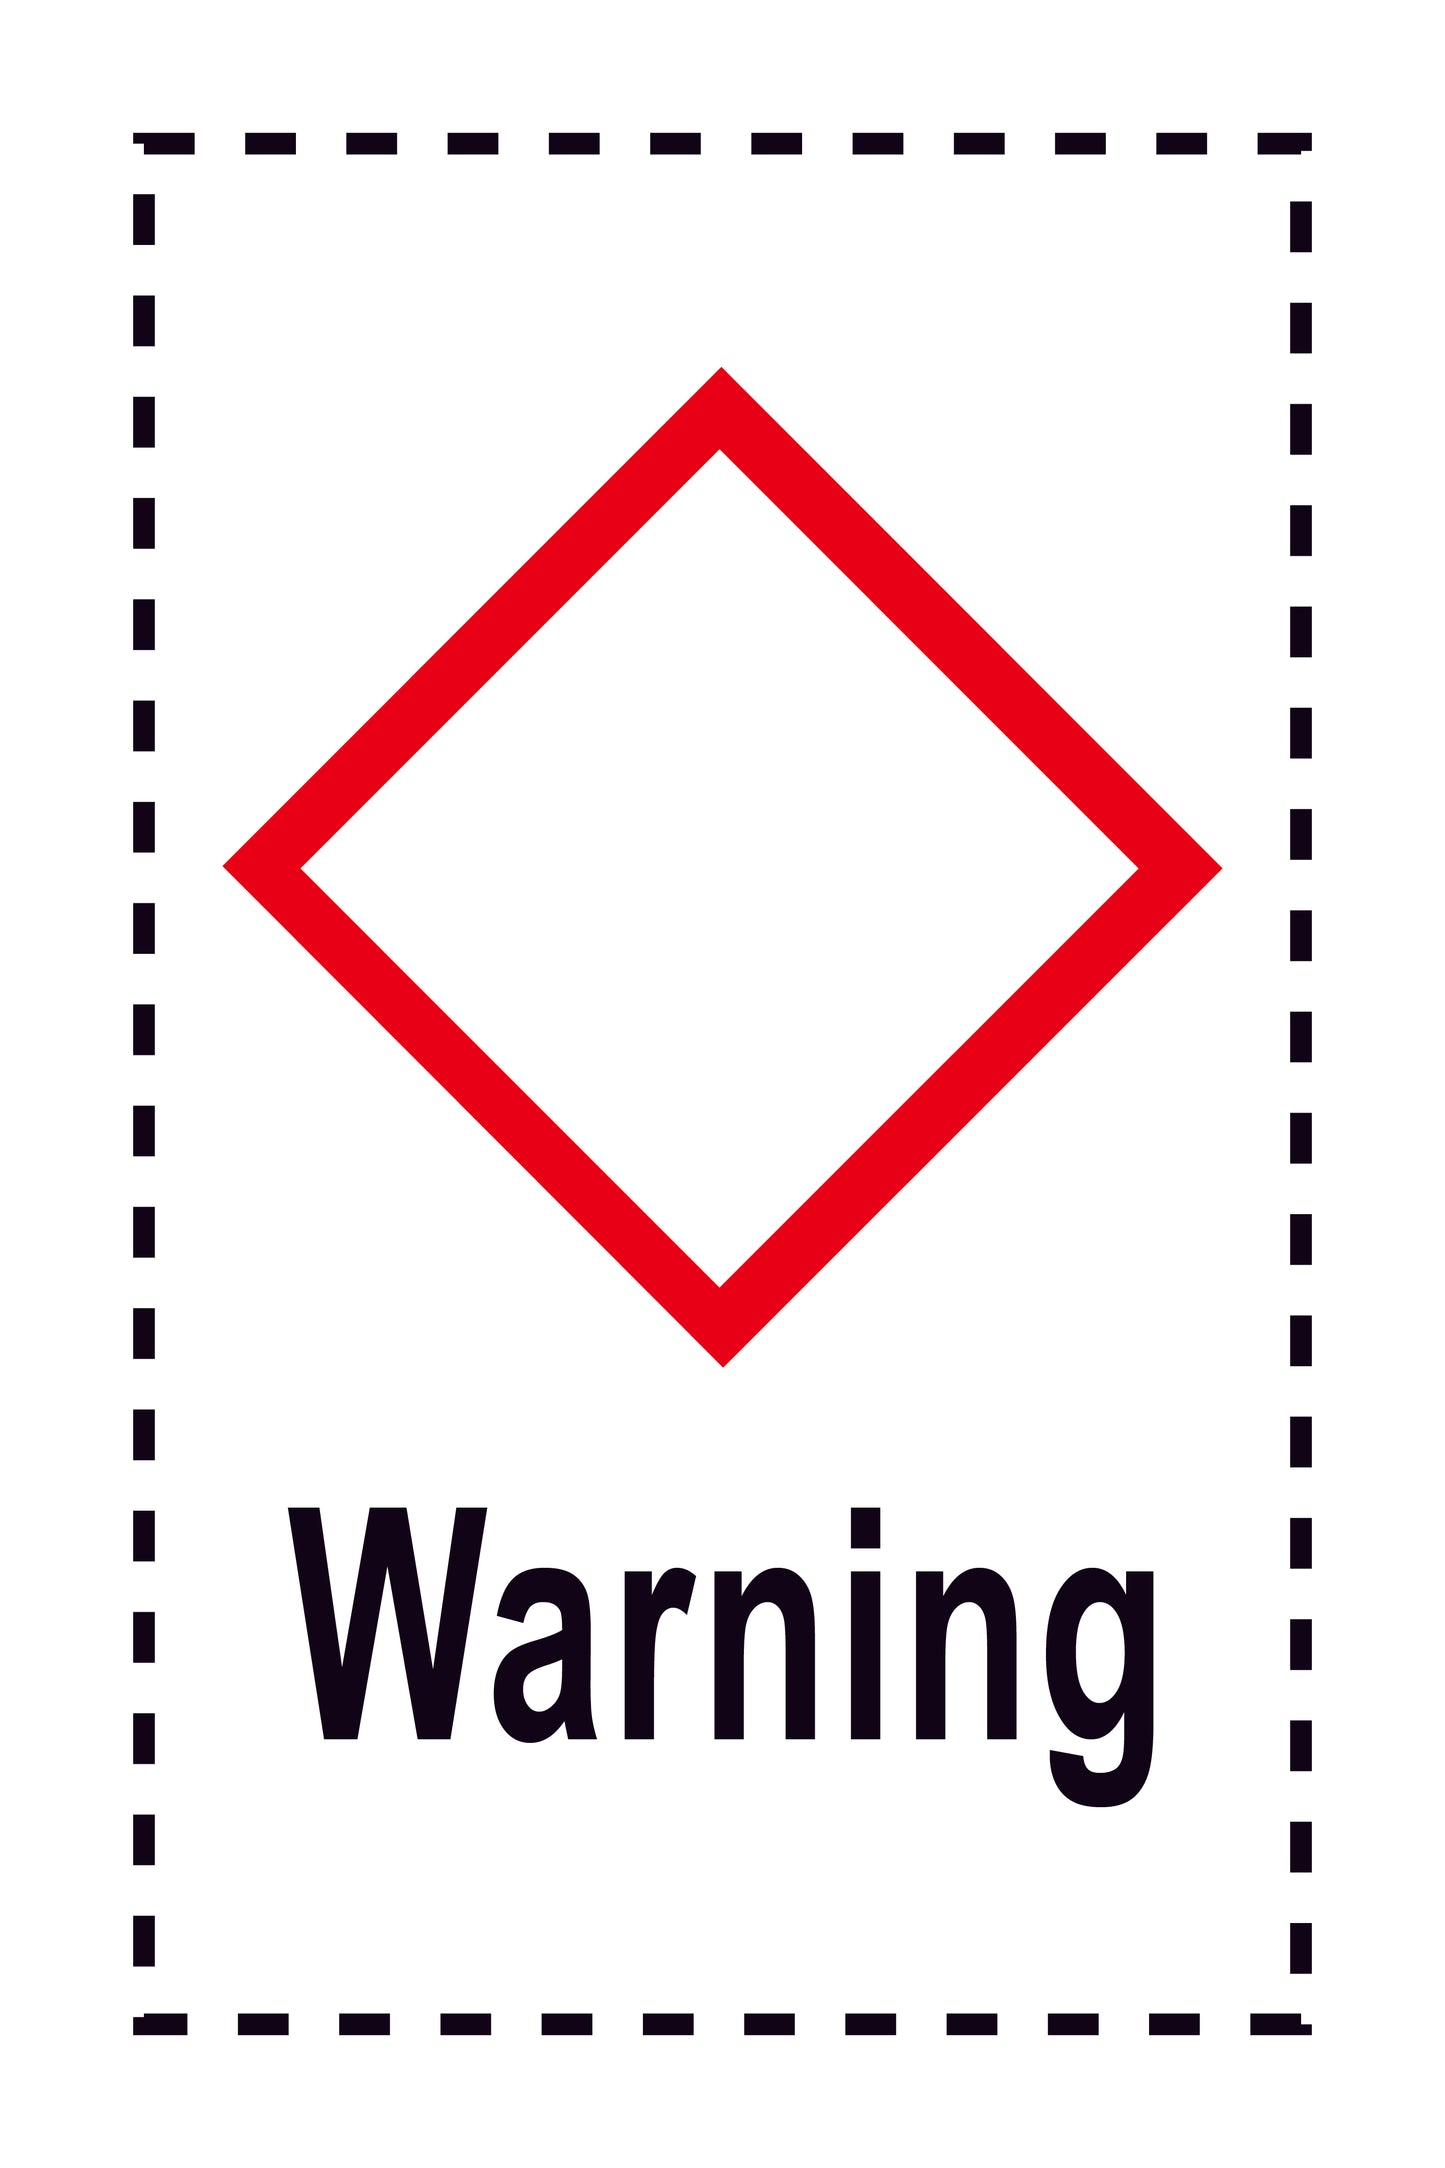 Aufkleber "Warning" 2.4x3.9 cm bis 15x24 cm, aus Papier oder Plastik ES-GHS-00-15-Warning